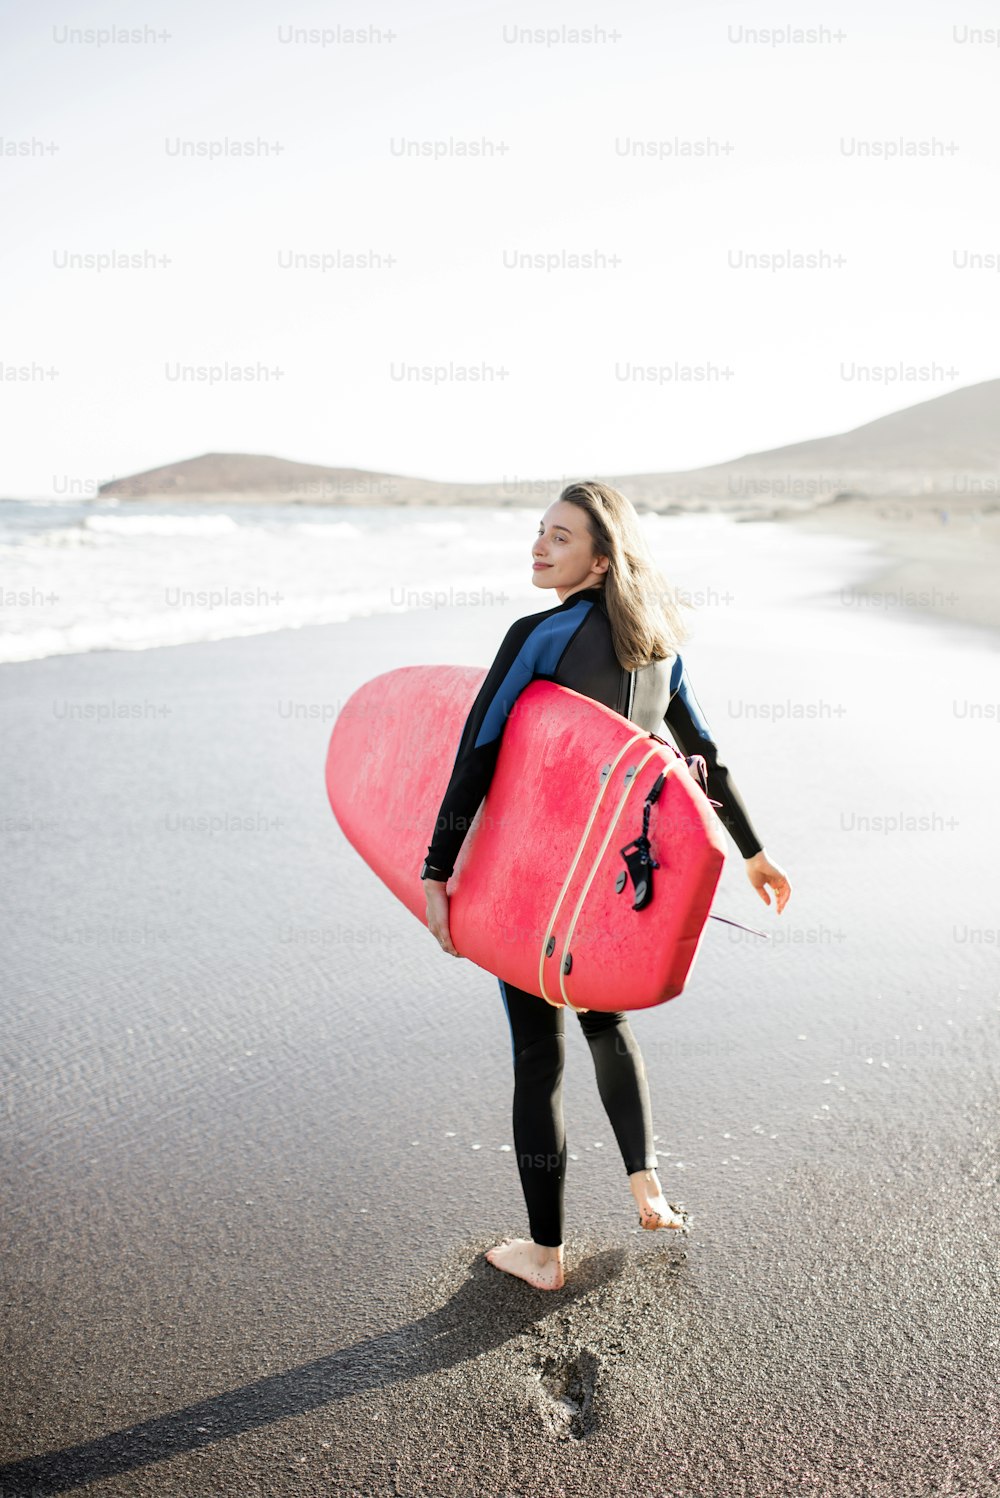 잠수복을 입은 젊은 여성이 서핑 보드를 들고 걷고, 모래 위에 발자국을 남기고, 뒤에서 본다. 수상 스포츠와 활동적인 라이프 스타일 개념